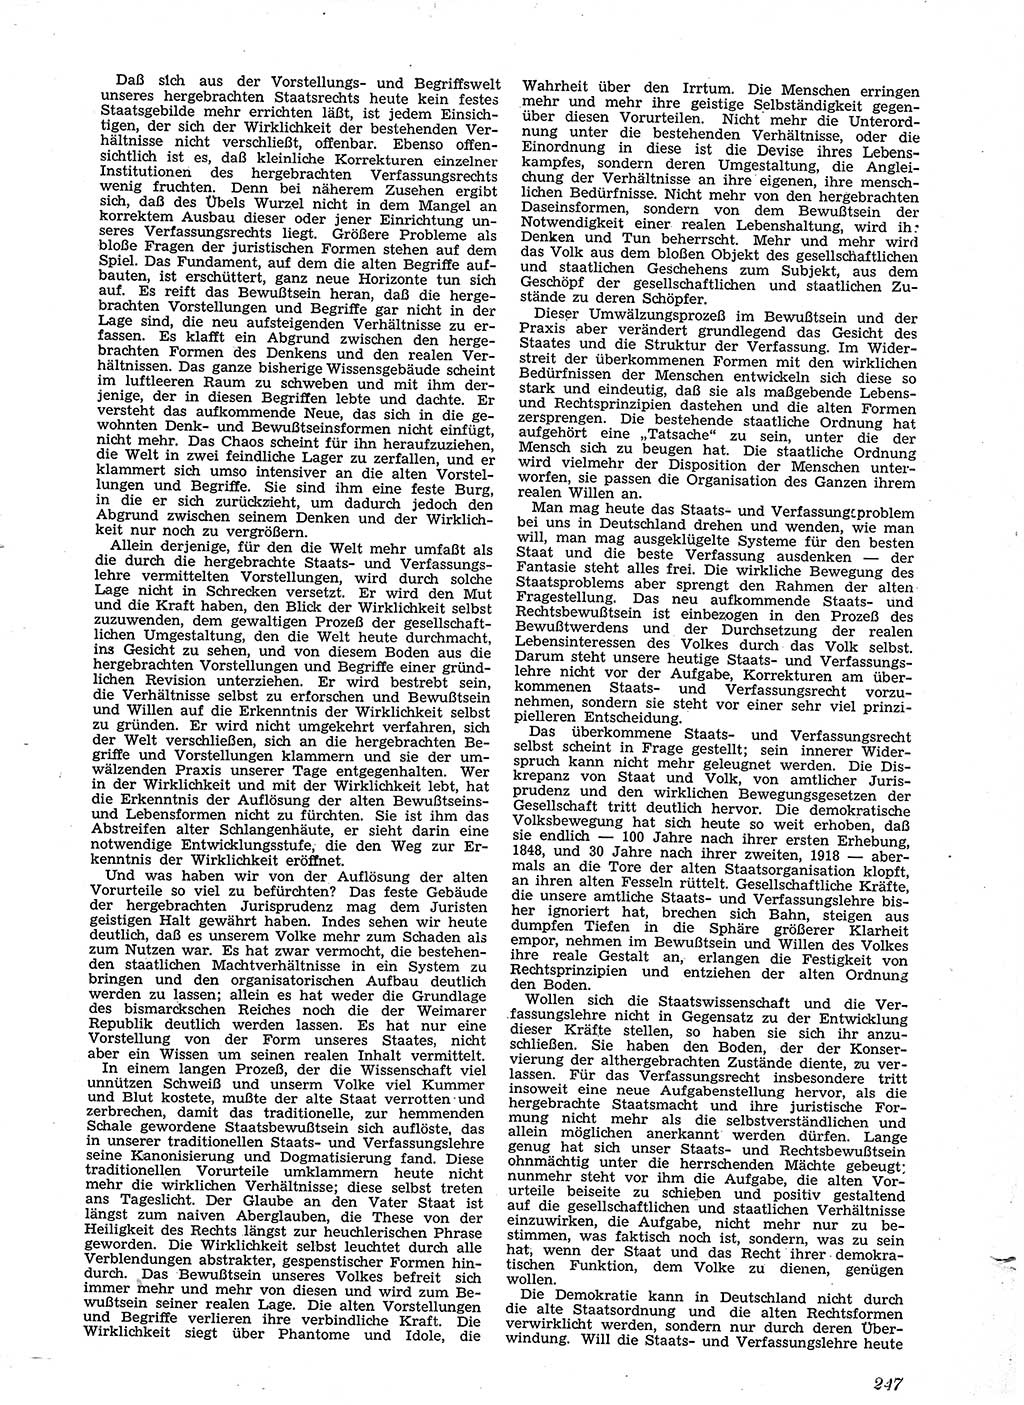 Neue Justiz (NJ), Zeitschrift für Recht und Rechtswissenschaft [Sowjetische Besatzungszone (SBZ) Deutschland], 2. Jahrgang 1948, Seite 247 (NJ SBZ Dtl. 1948, S. 247)